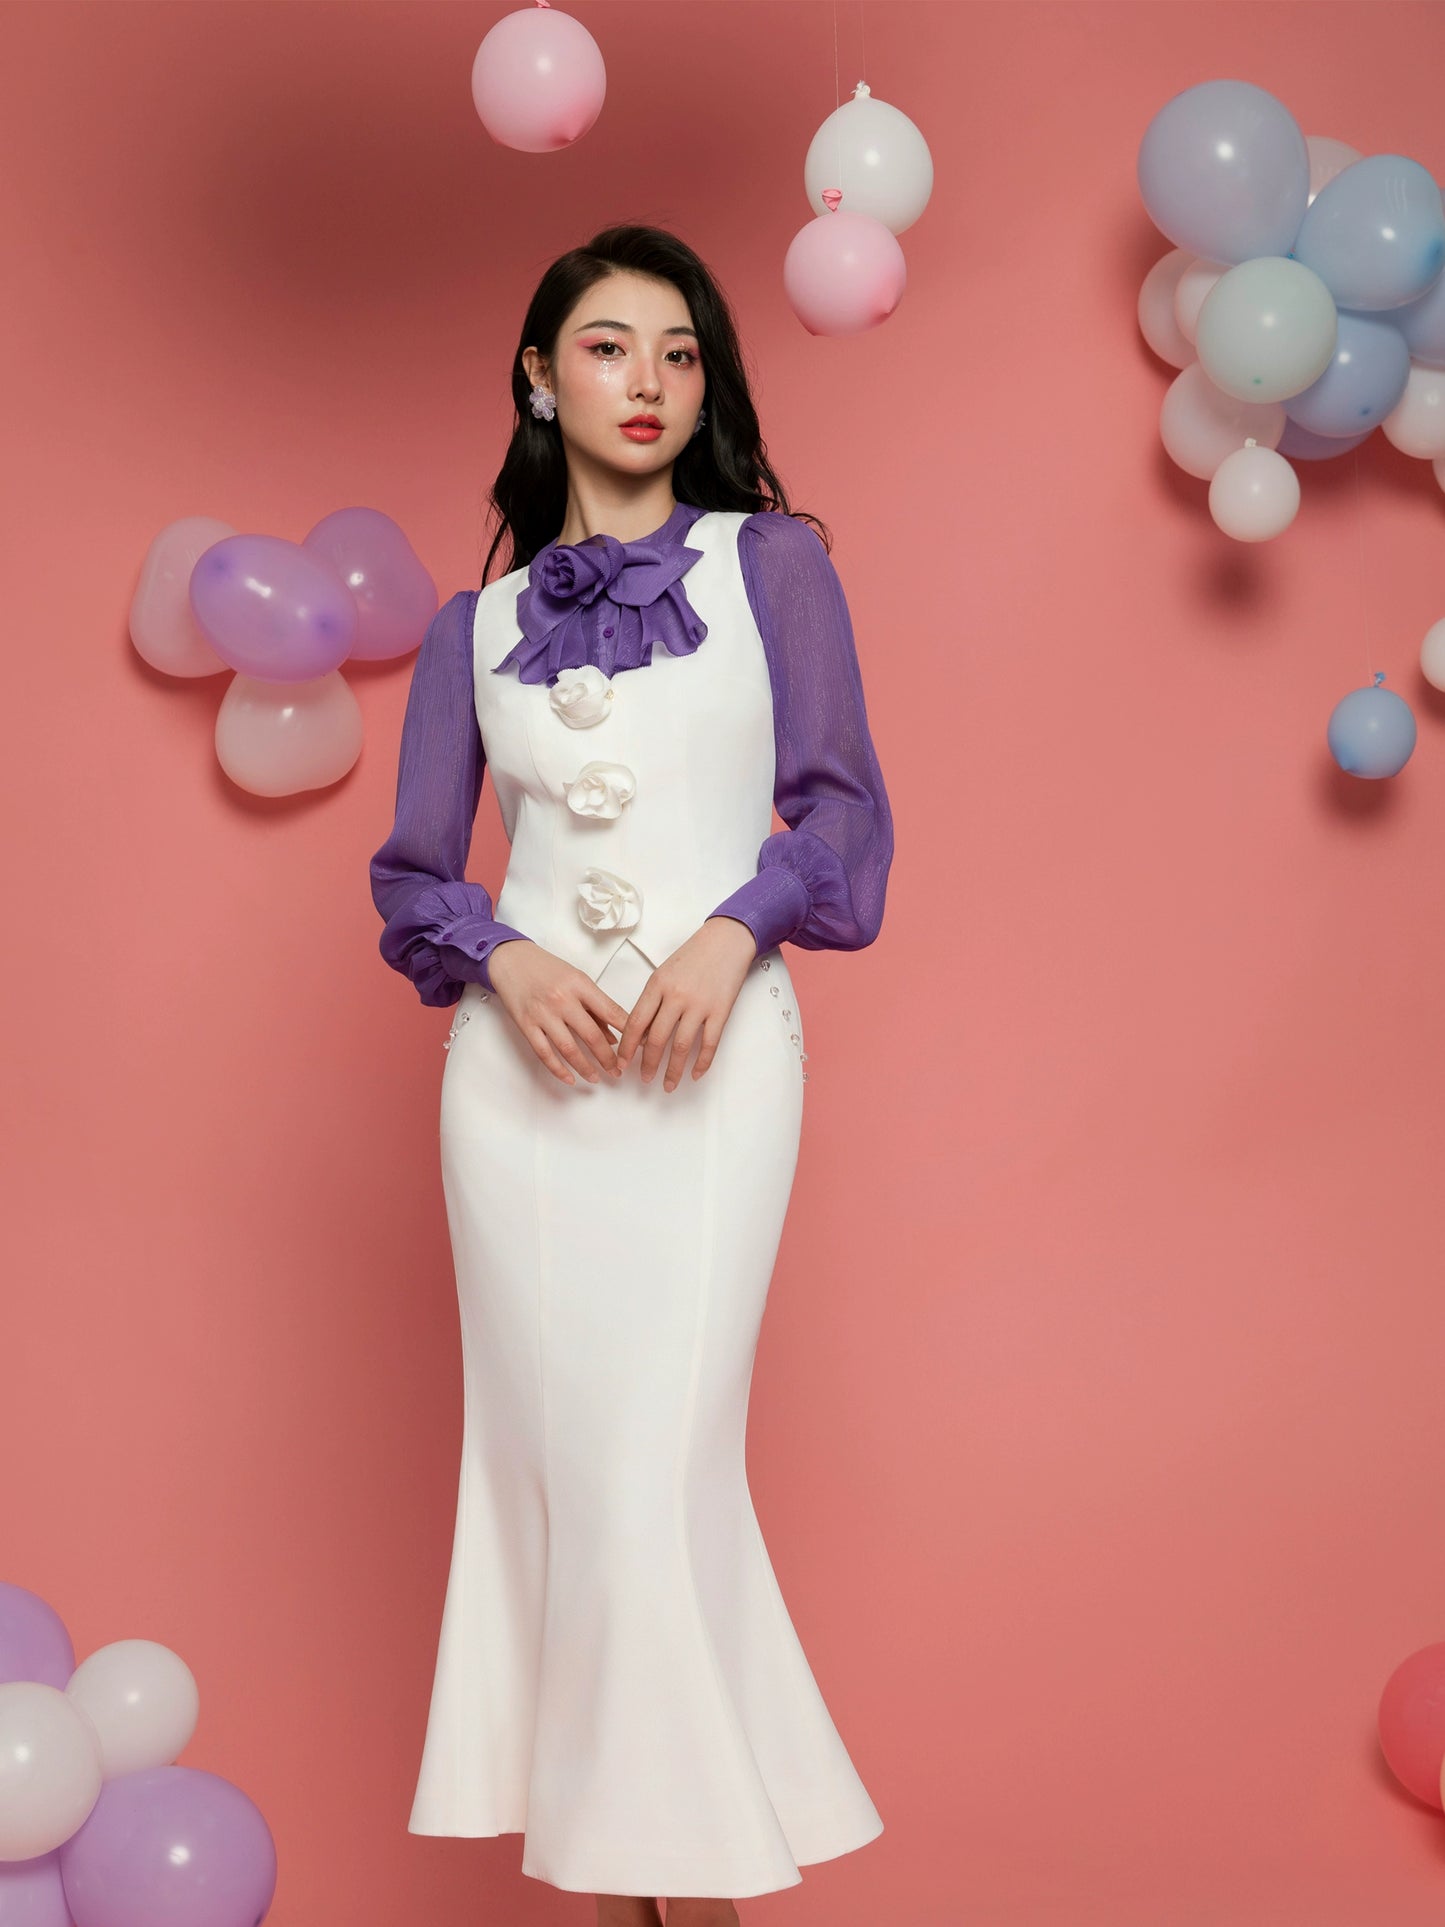 Magic Q white V-neck rose embellished slim vest studded high-rise skinny skirt set